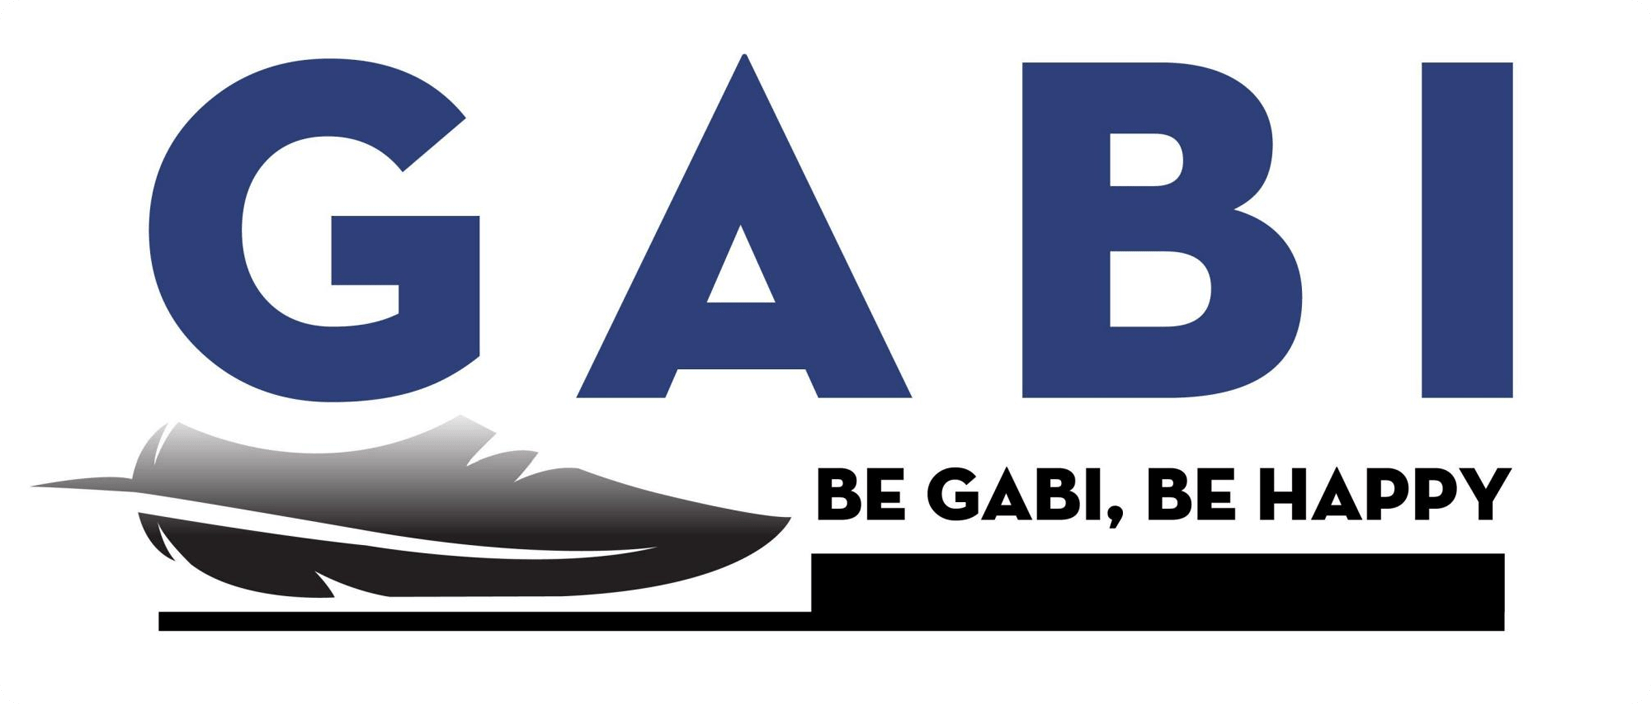 के साथ डिजाइन सेवाओं, कंपनी के लोगो Gabi के माध्यम से व्यक्त एक पंख गुलाबी रंग लाने के लिए और चढ़ाव कैलकुलेटर में मदद करता है Gabi है लक्जरी वर्ग के व्यापार